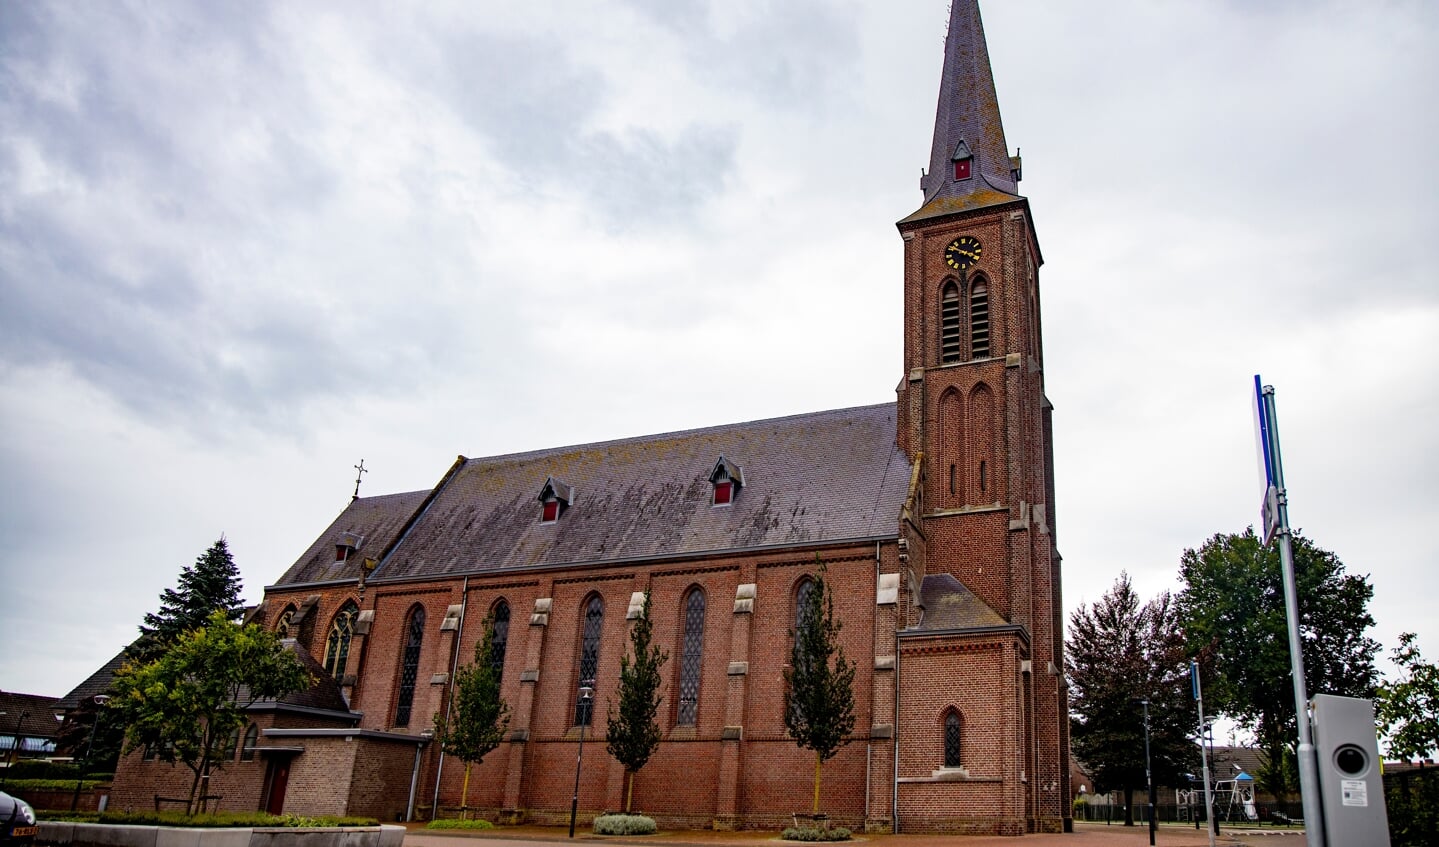 Donderdag 10 maart krijgt de kerk in Leunen en Veulen aandacht.